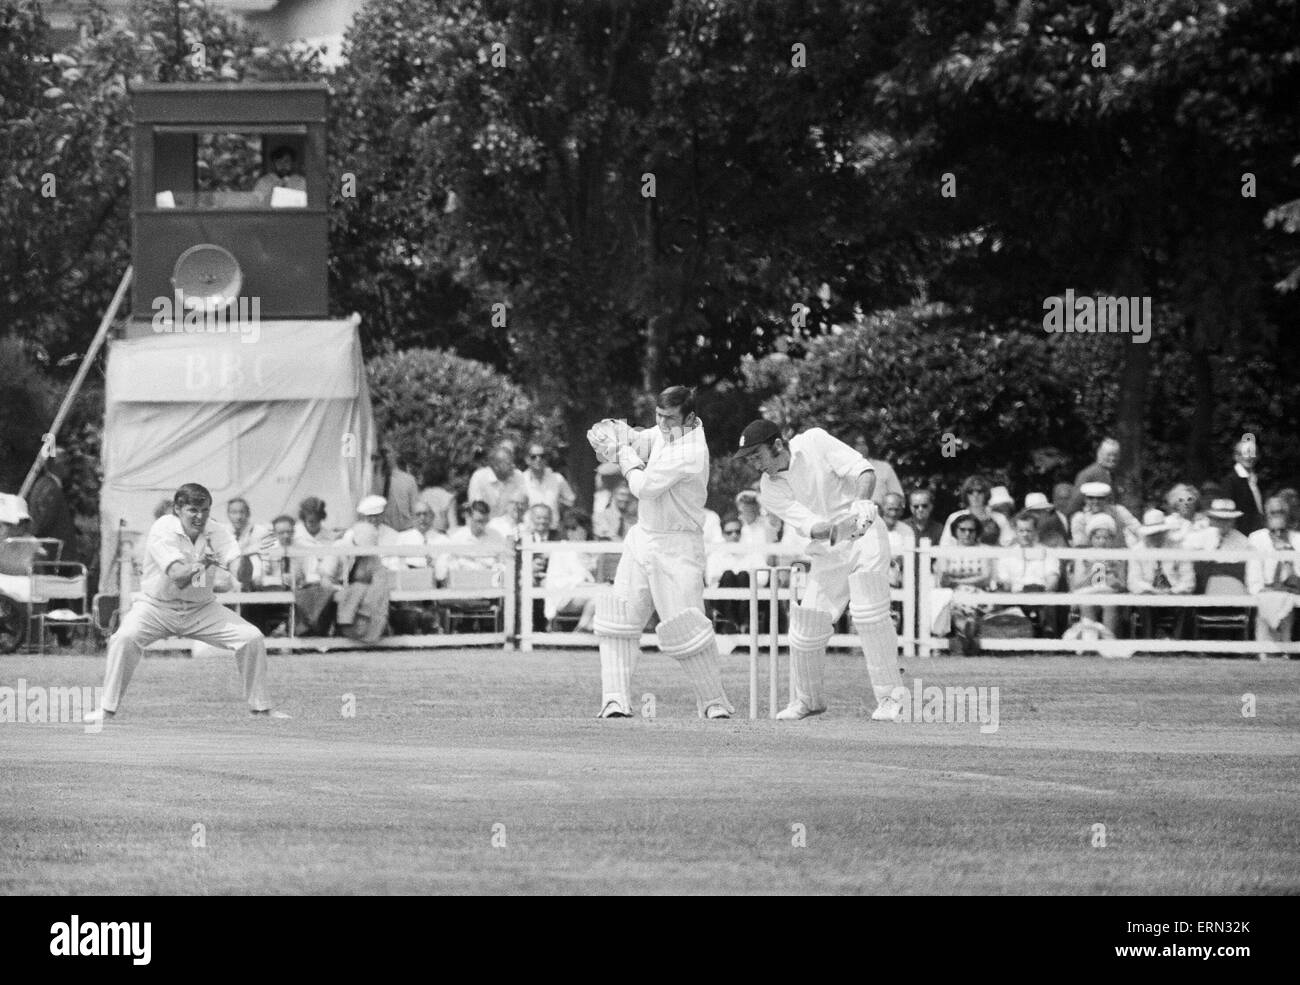 Essex V Lancashire County Cricket Championship match bei Valentins Park, Ilford. Essex Batsman spielt und während seiner Seite Innings vermisst. 13. Juni 1970. Stockfoto